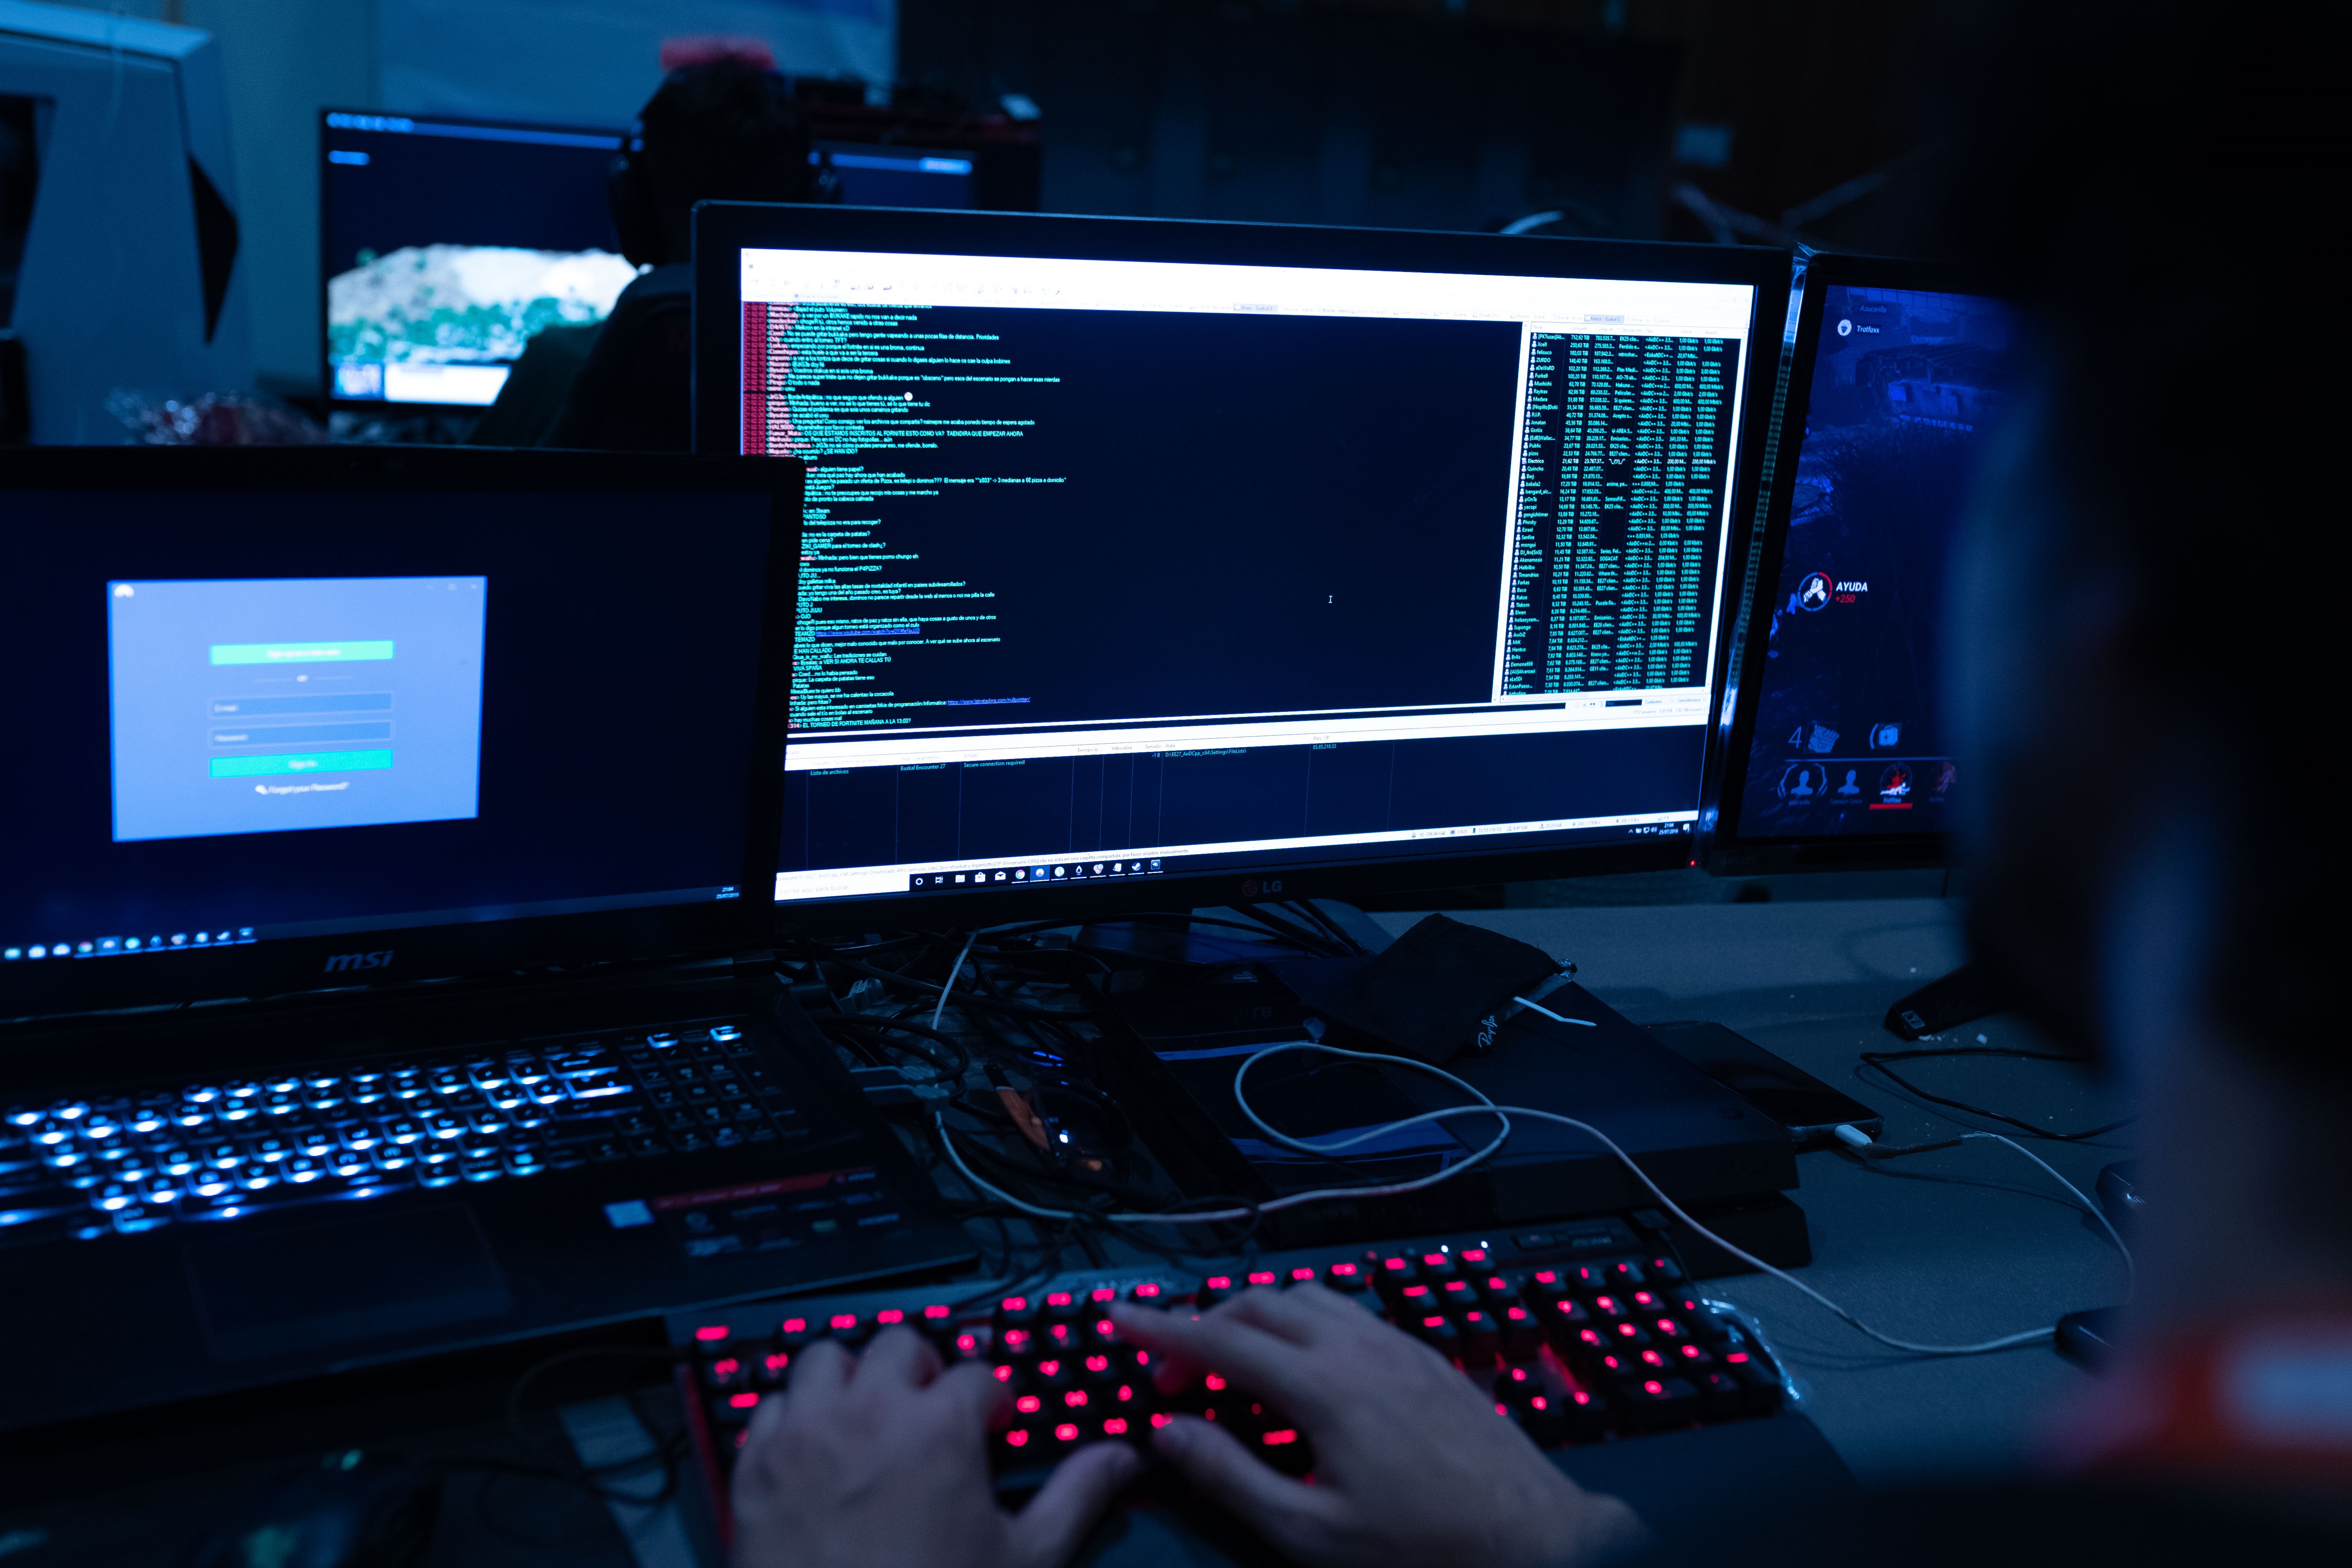 Por sus métodos, su disciplina y su planeamiento intensivo, los hackers muestran el modus operandi de una agencia estatal de inteligencia